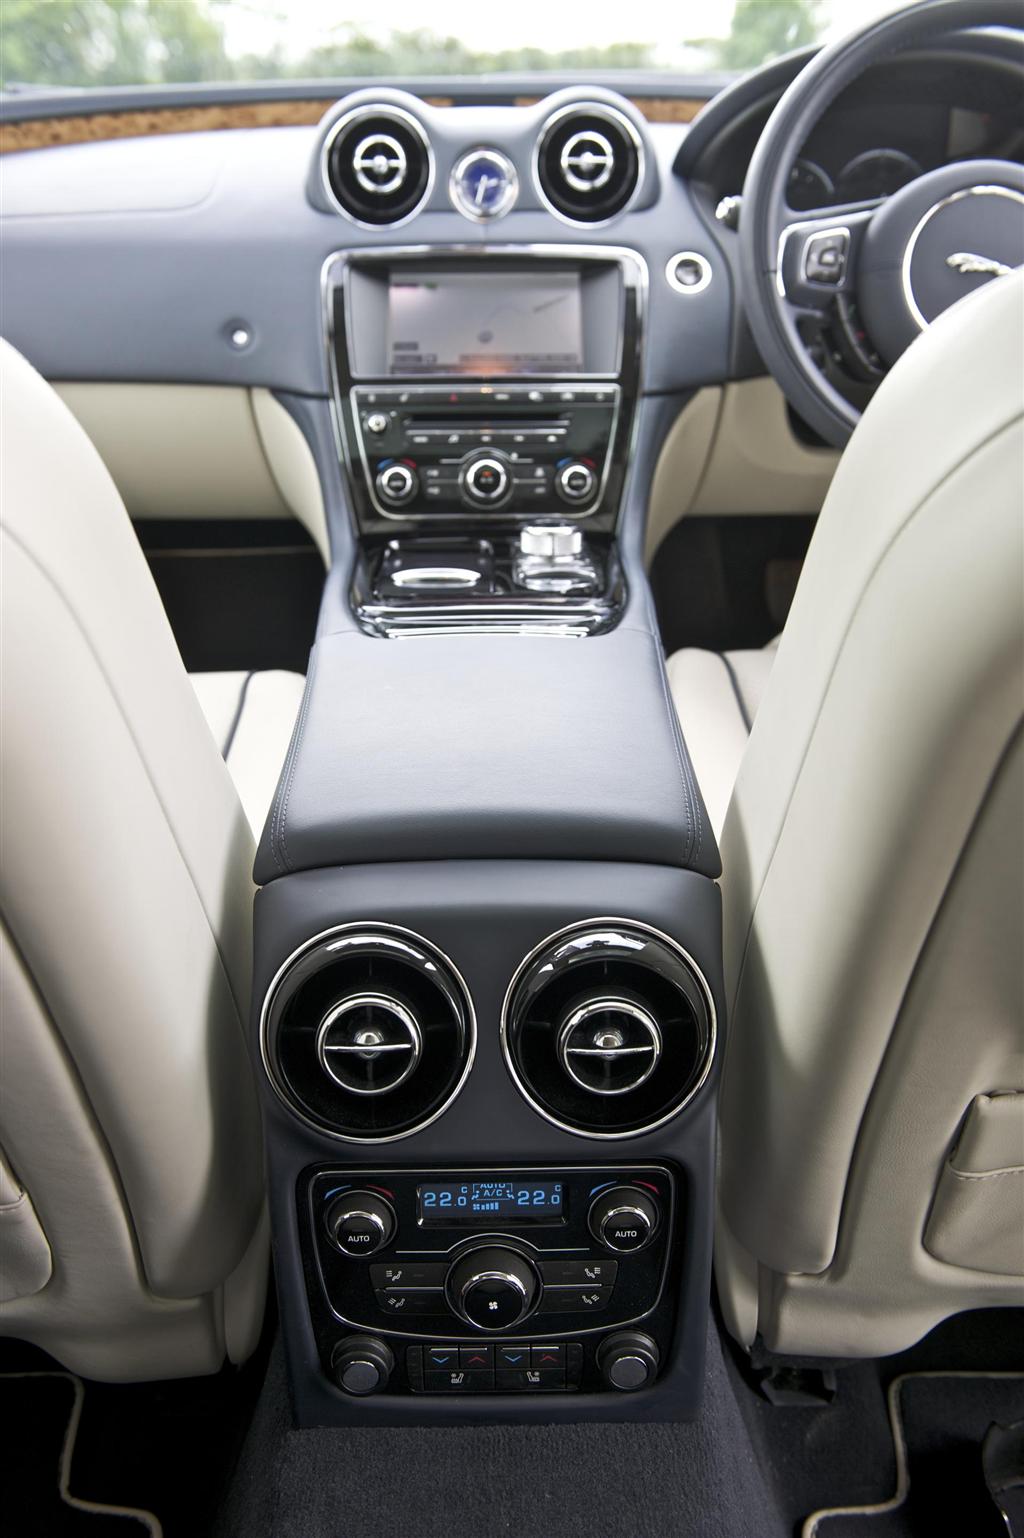 2012 Jaguar XJ